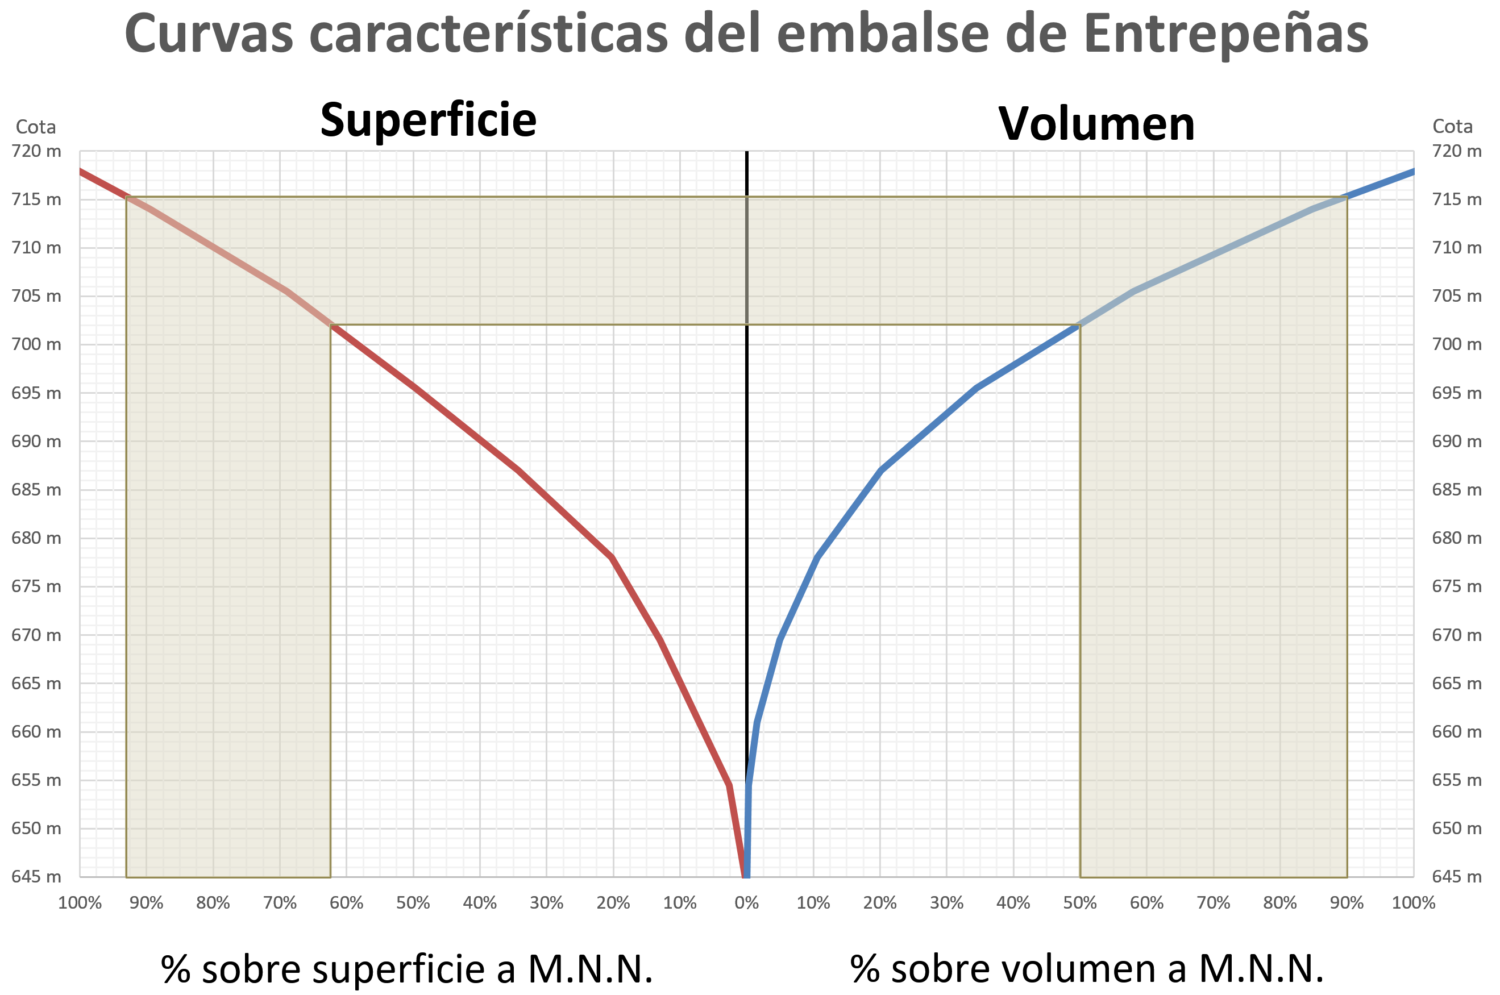 Representación sobre las curvas características del embalse de Entrepeñas del rango principal de funcionamiento del embalse antes de la entrada en servicio del trasvase Tajo-Segura